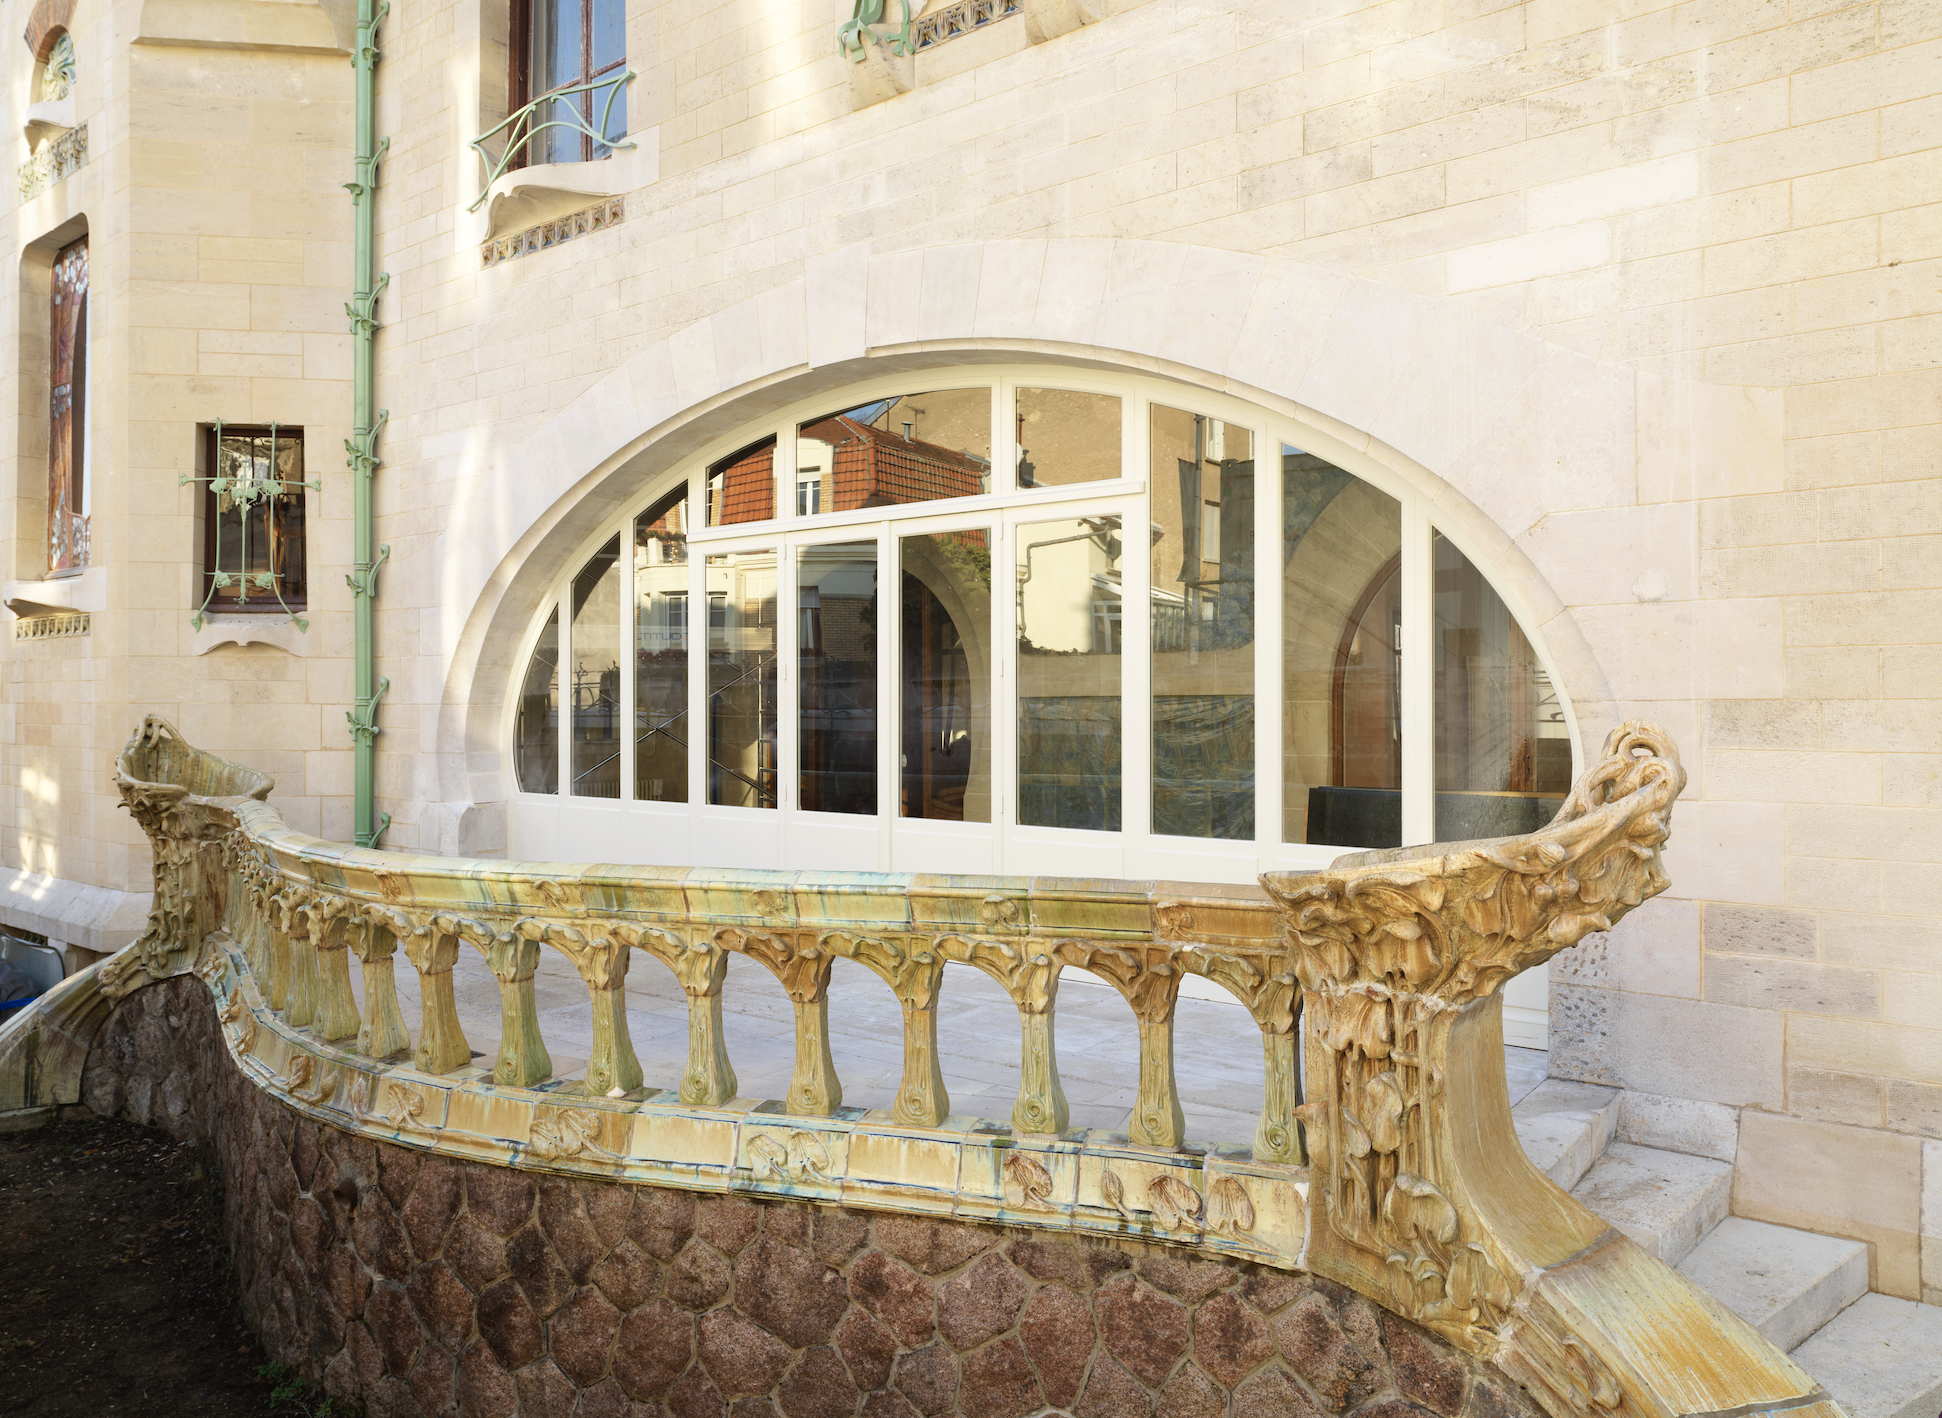 La Villa Majorelle, chef d’oeuvre de l’Art nouveau/aufildeslieux.fr/ Villa Majorelle après rénovation© MEN Siméon Levaillant